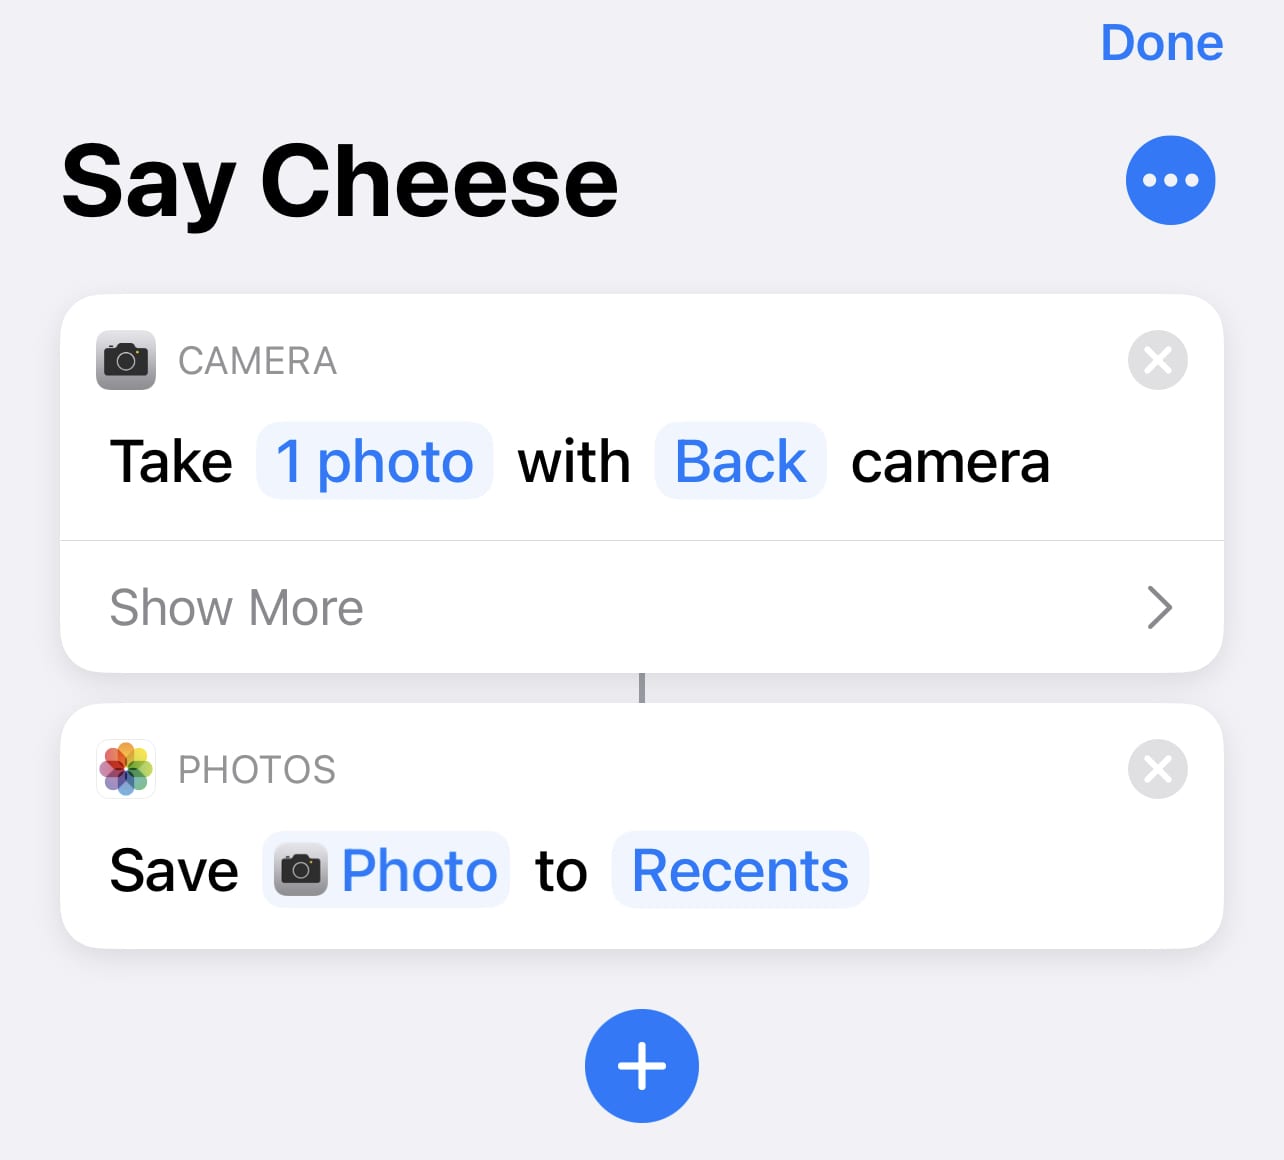 Naming the shortcut "Say Cheese"